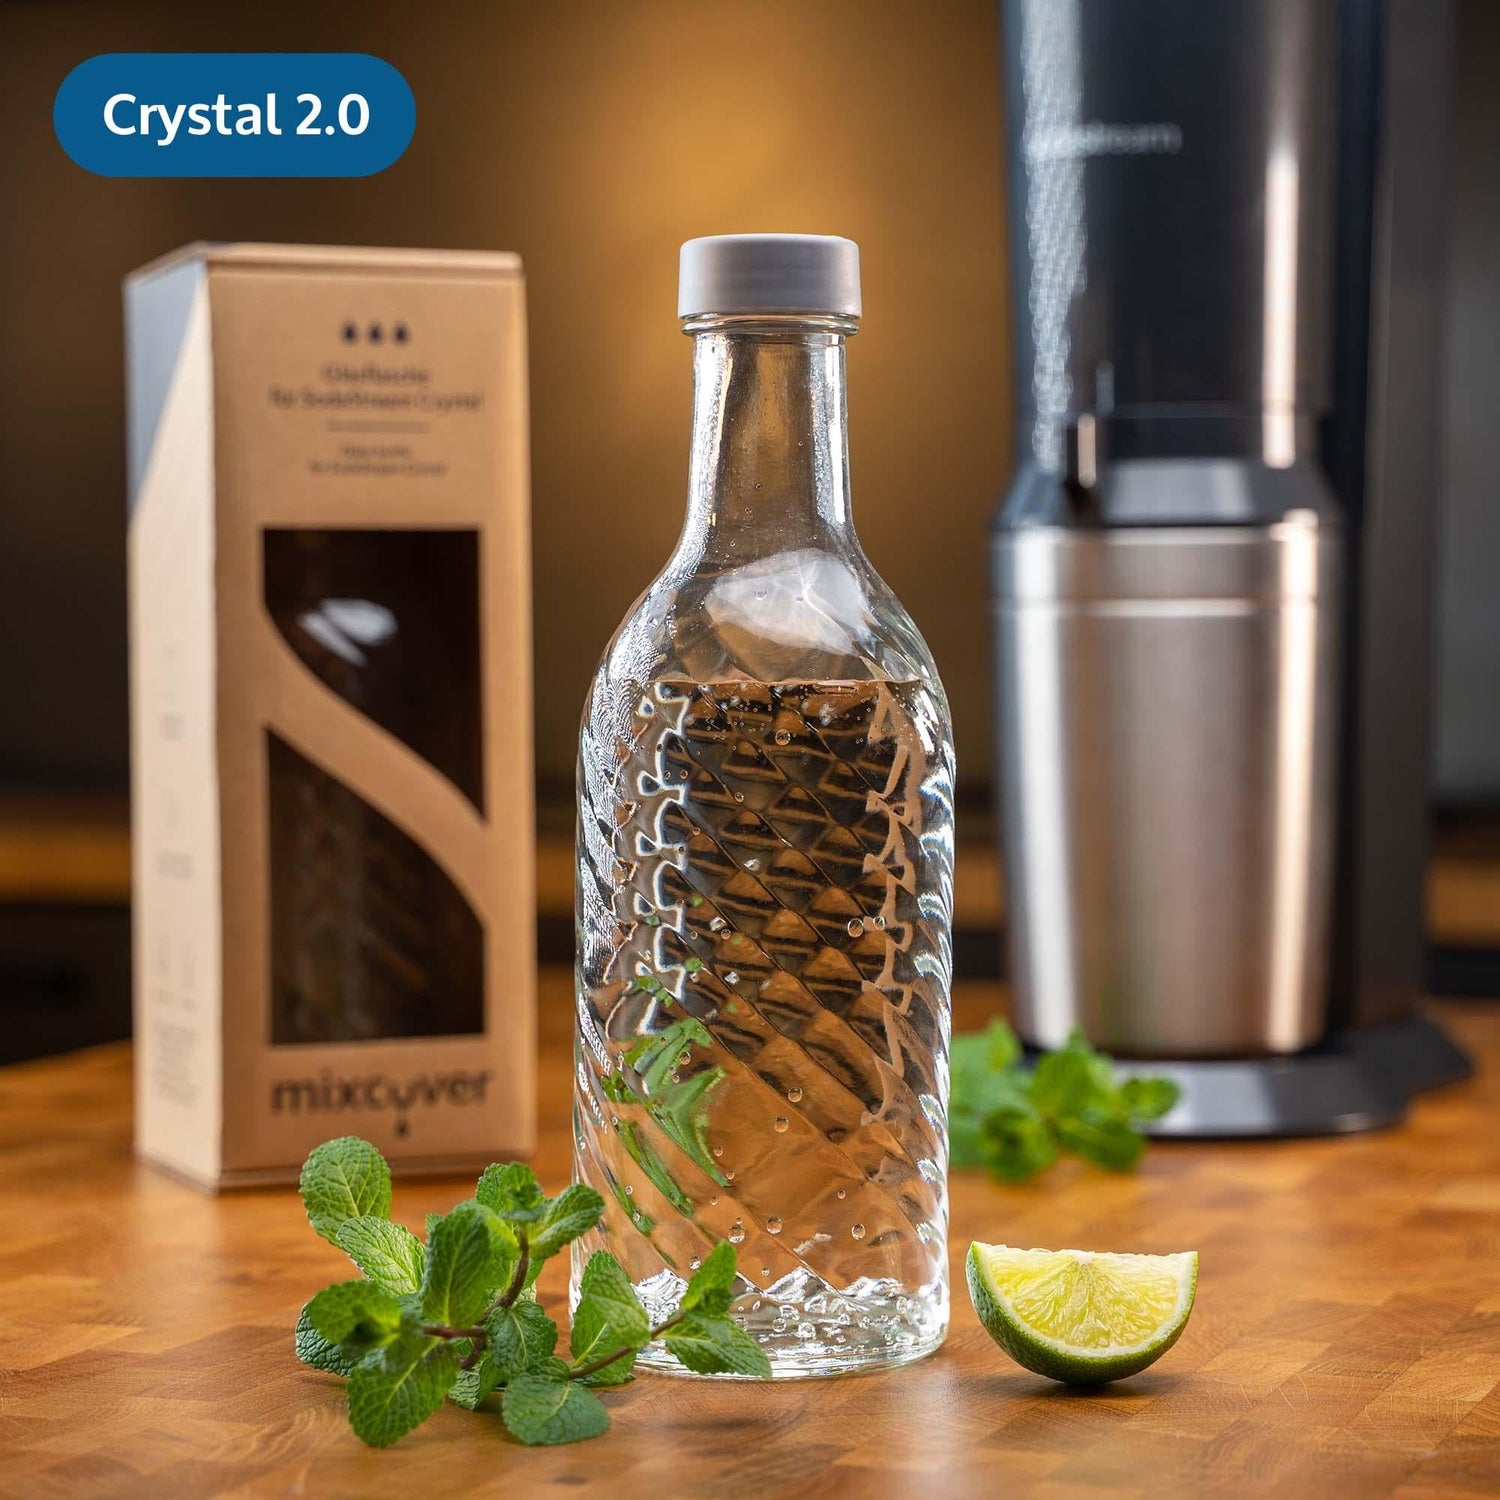 Mixcover Botella de vidrio compatible con Sodastream Crystal 2.0 con 10%  más de volumen transparente - Mixcover